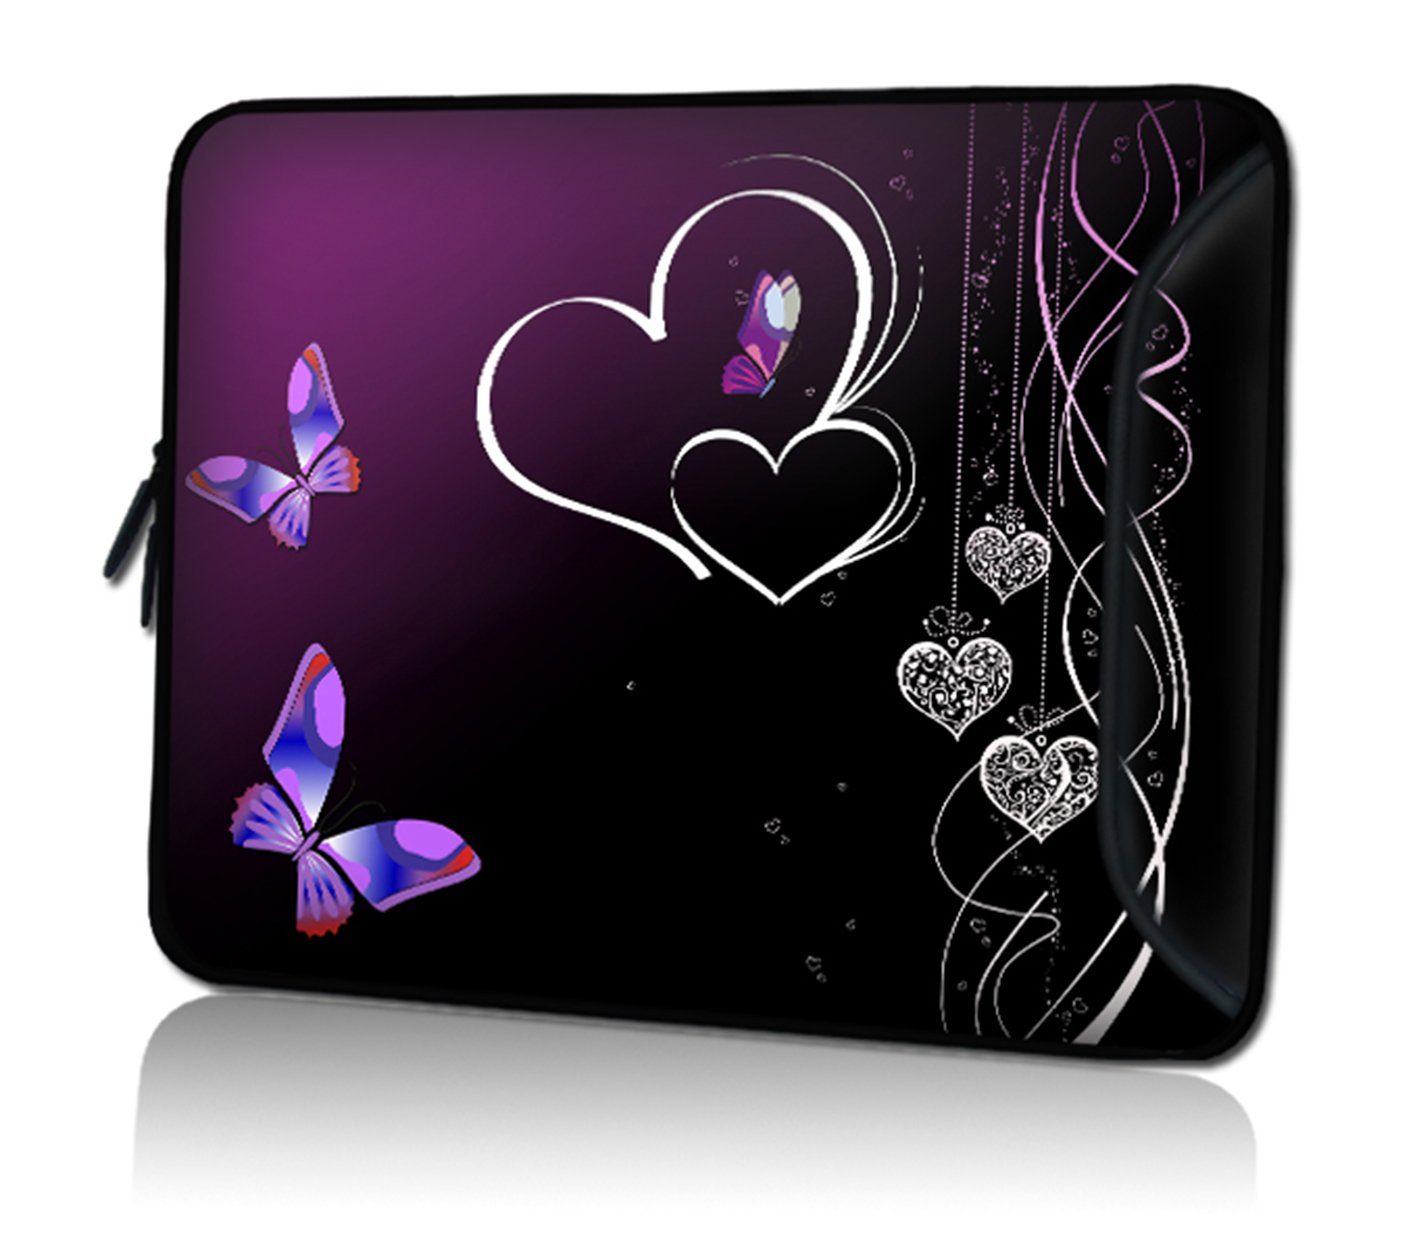 wortek Laptoptasche für Laptops bis 15,4", Schmetterling Herz, Wasserabweisend